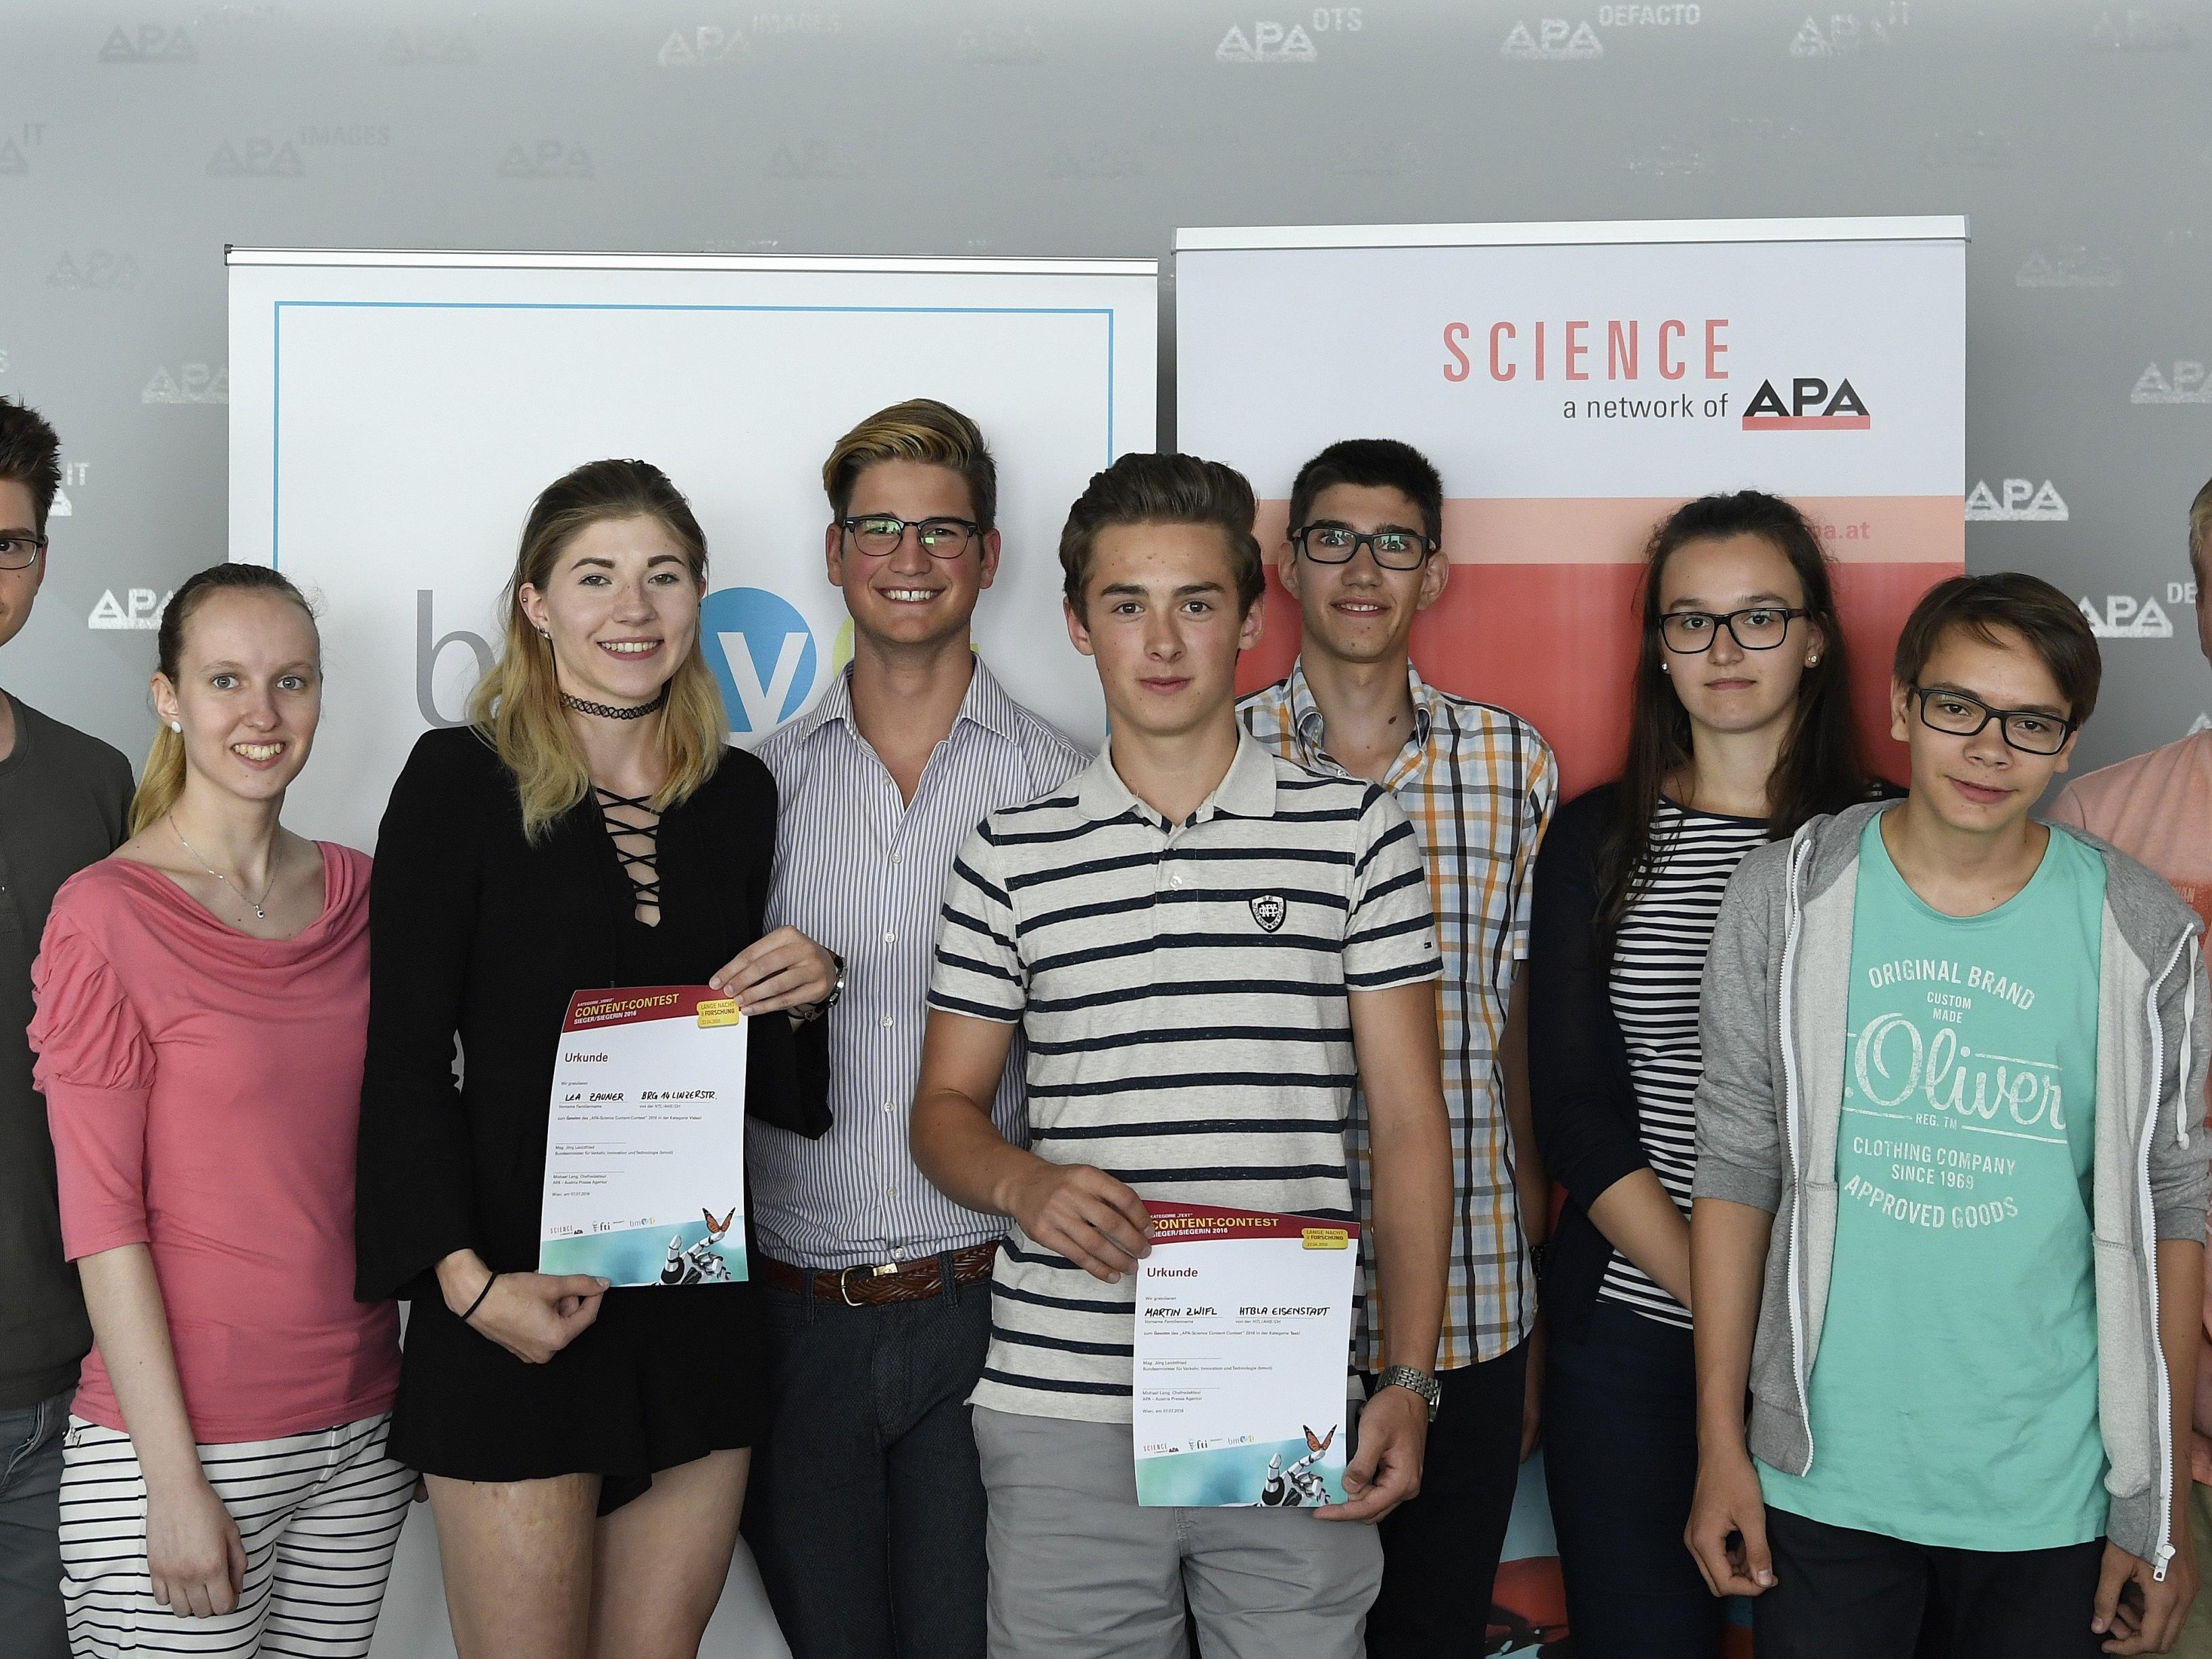 Die Gewinner der des APA-Science Content-Contest wurden gekürt